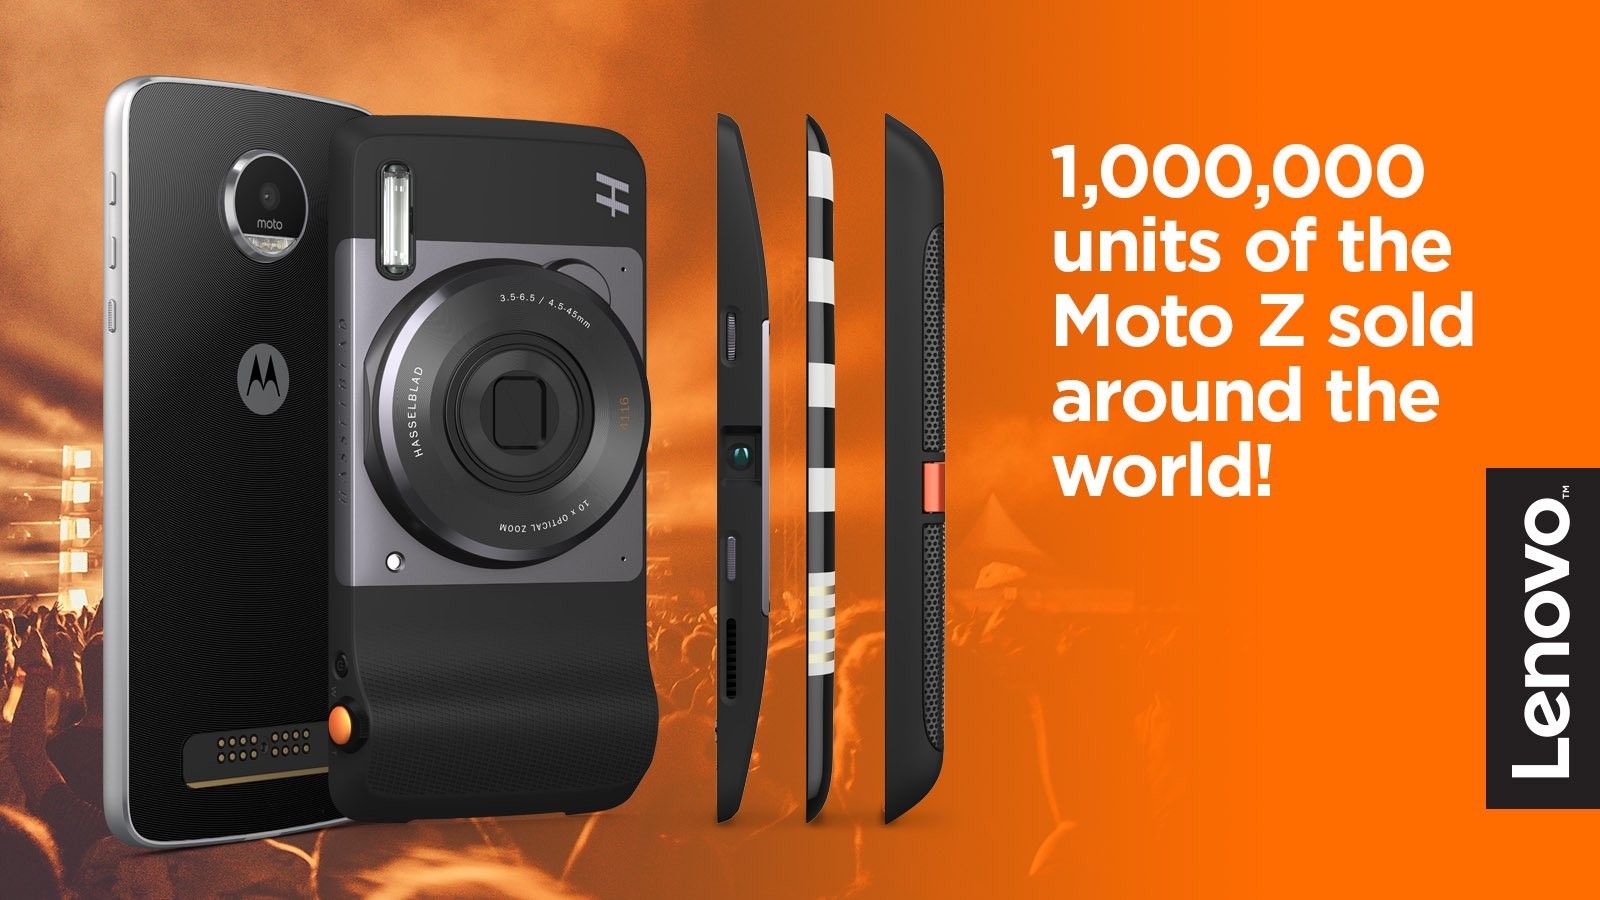 ล้านแล้วจ้า~ Moto Z มาแรง ทำยอดขายทั่วโลกครบ 1 ล้านเครื่องเป็นที่เรียบร้อย